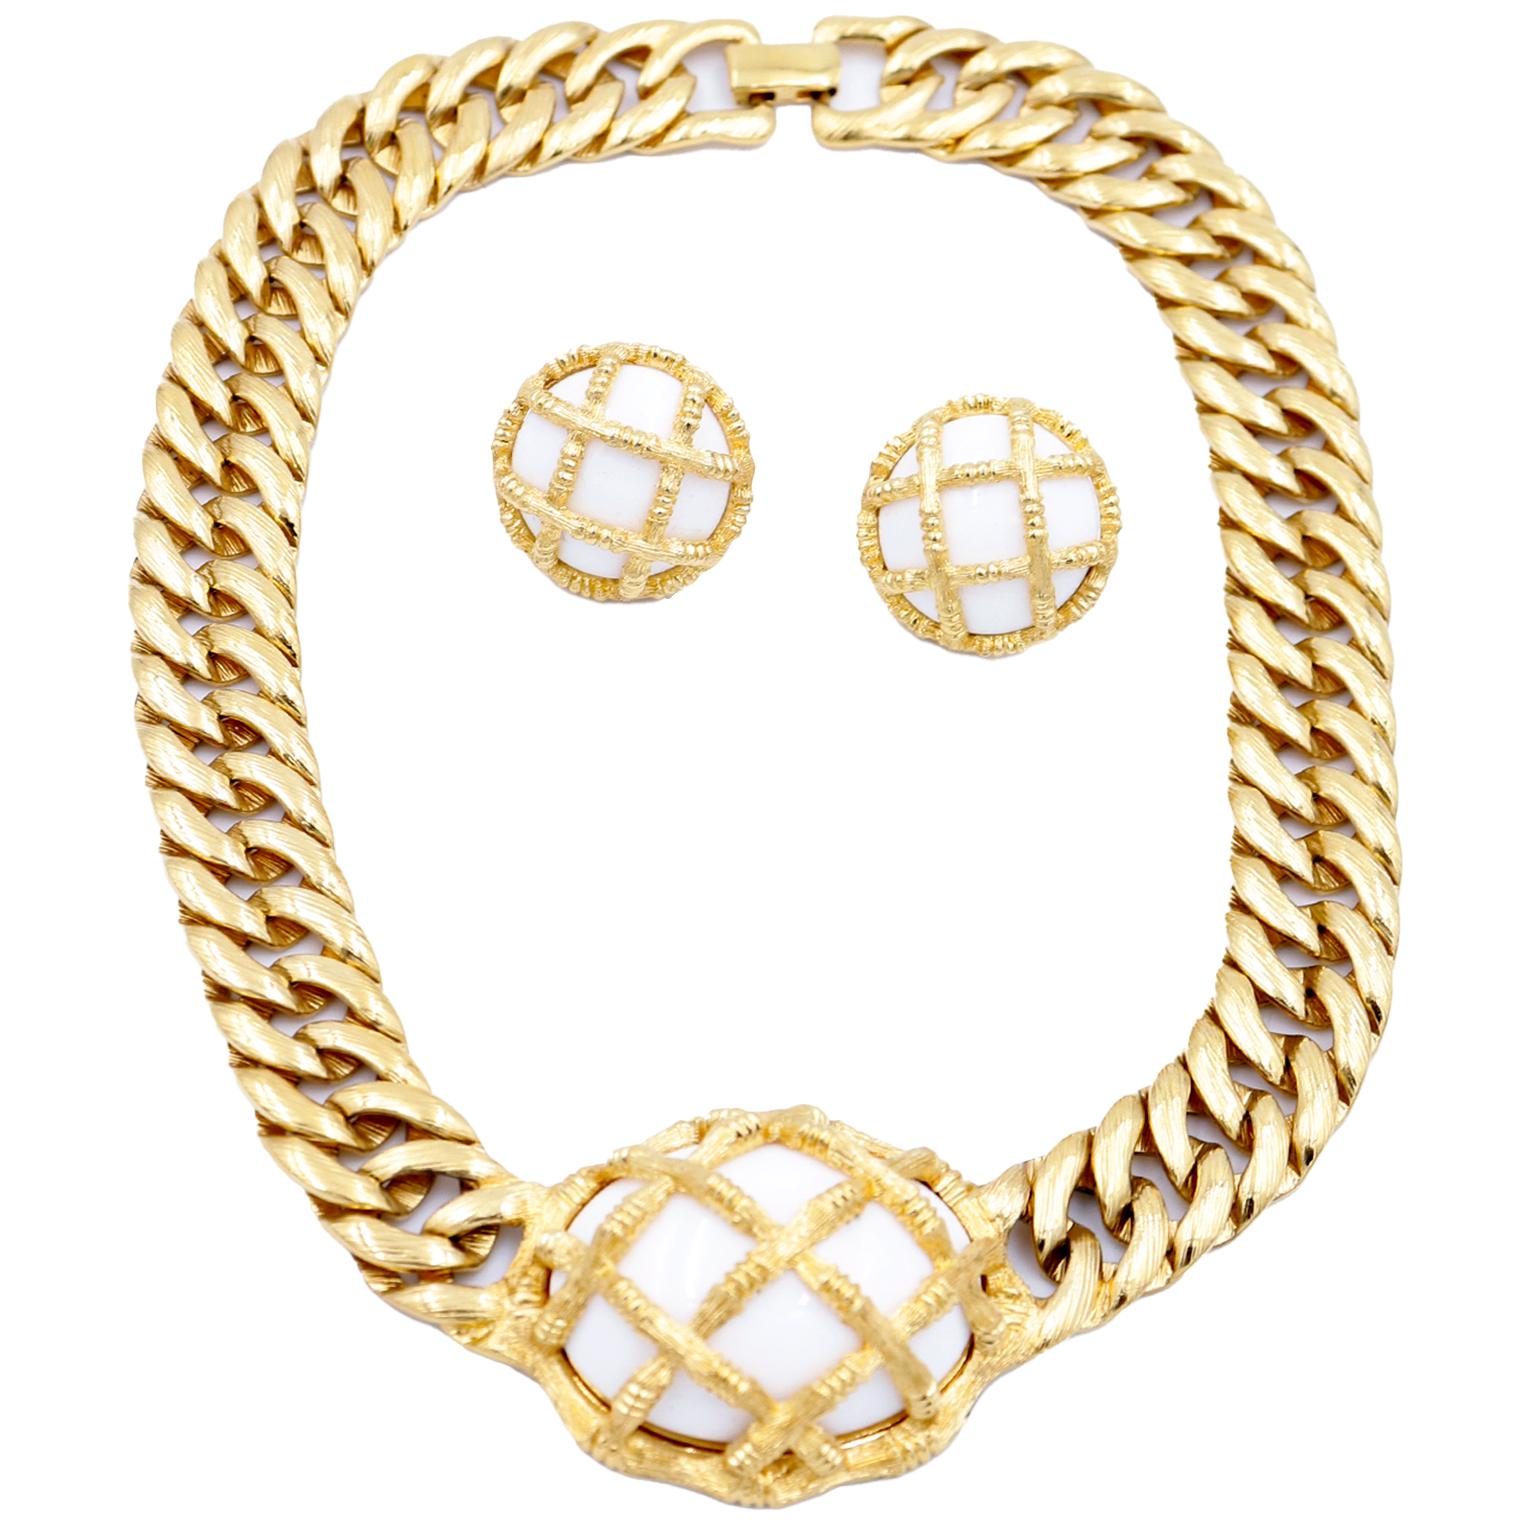 Dies ist eine wirklich einzigartige Vintage 1980's Monet Gold Halskette und Ohrring-Set mit weißen Käfig Kuppeln schön kontrastiert die luxe Gold. Vintage Monet-Schmuck ist so gut gemacht und sie verwendet nur  die besten MATERIALIEN für